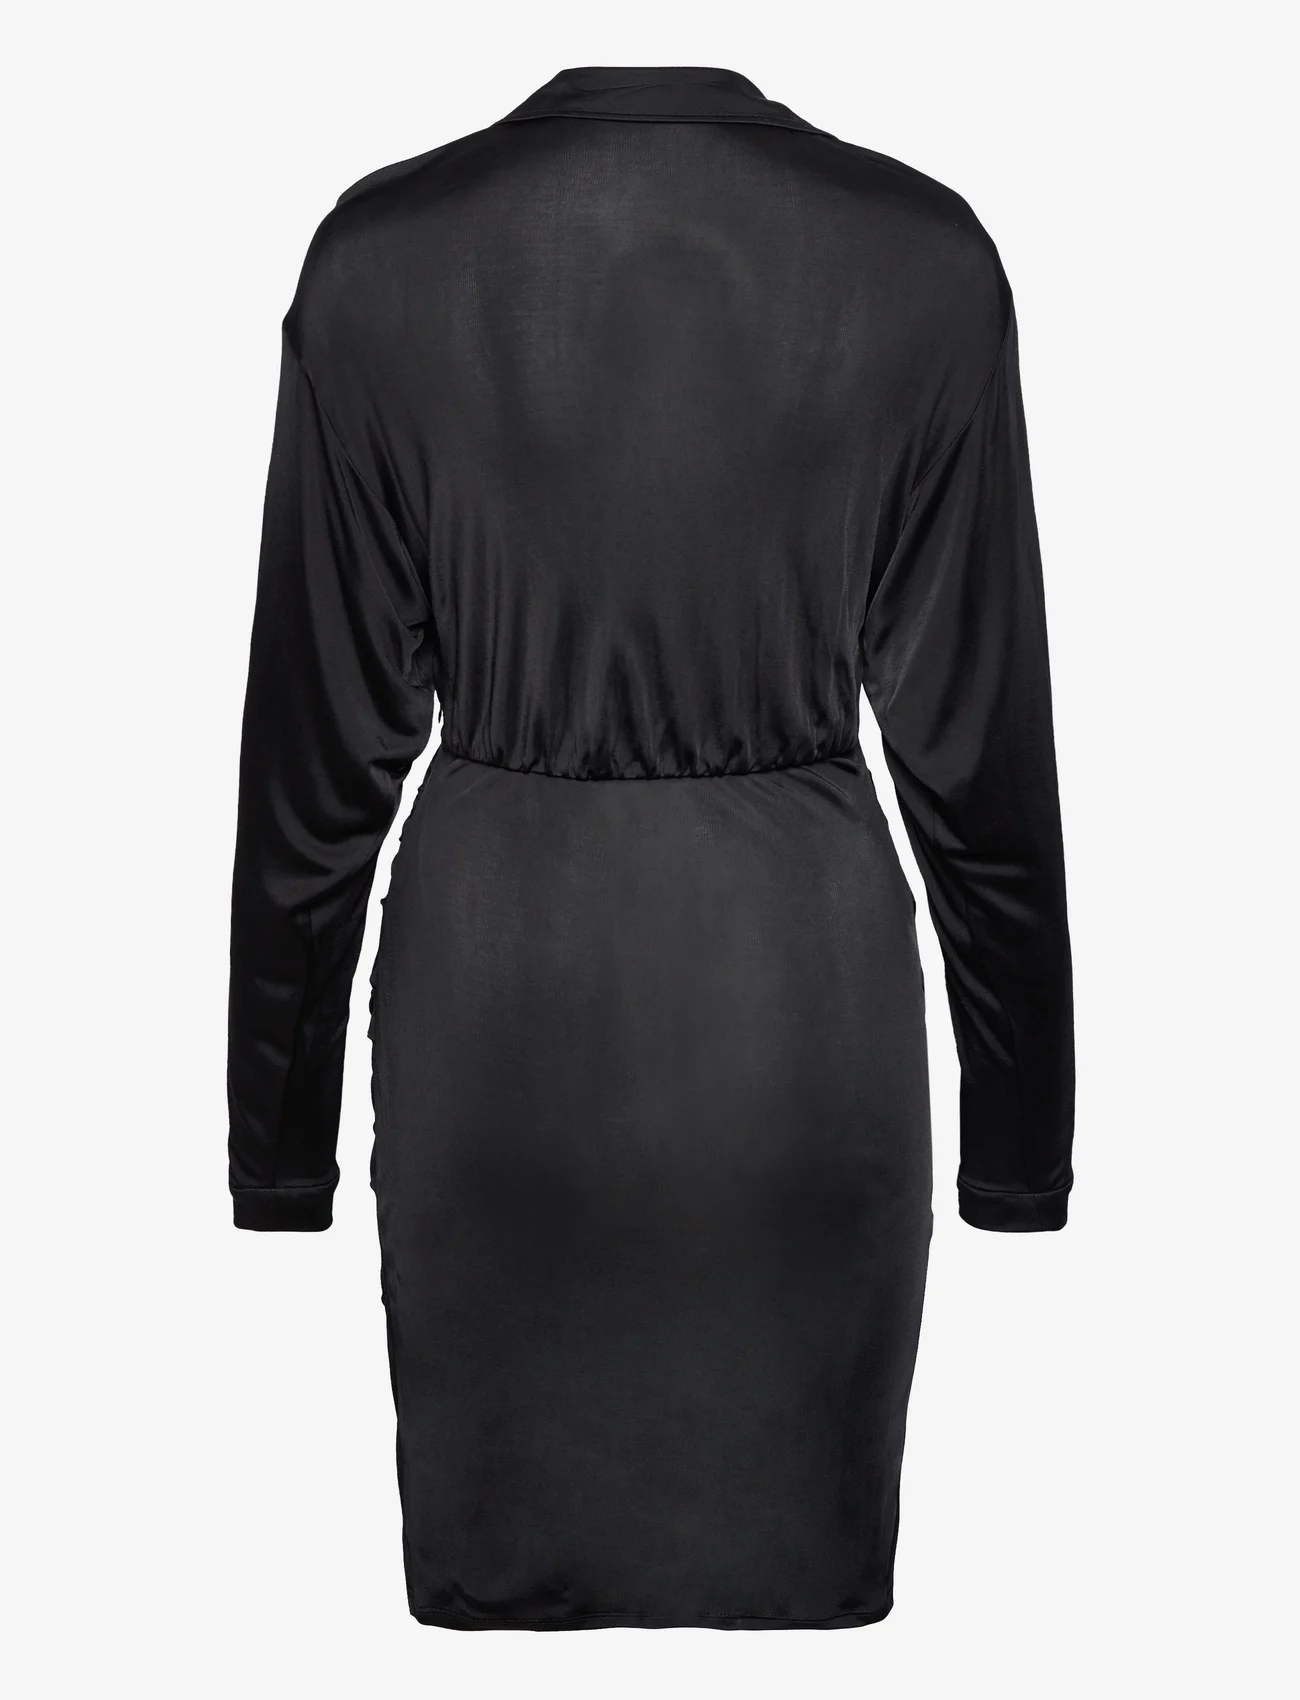 Diane von Furstenberg - DVF TROIAN DRESS - odzież imprezowa w cenach outletowych - black - 1